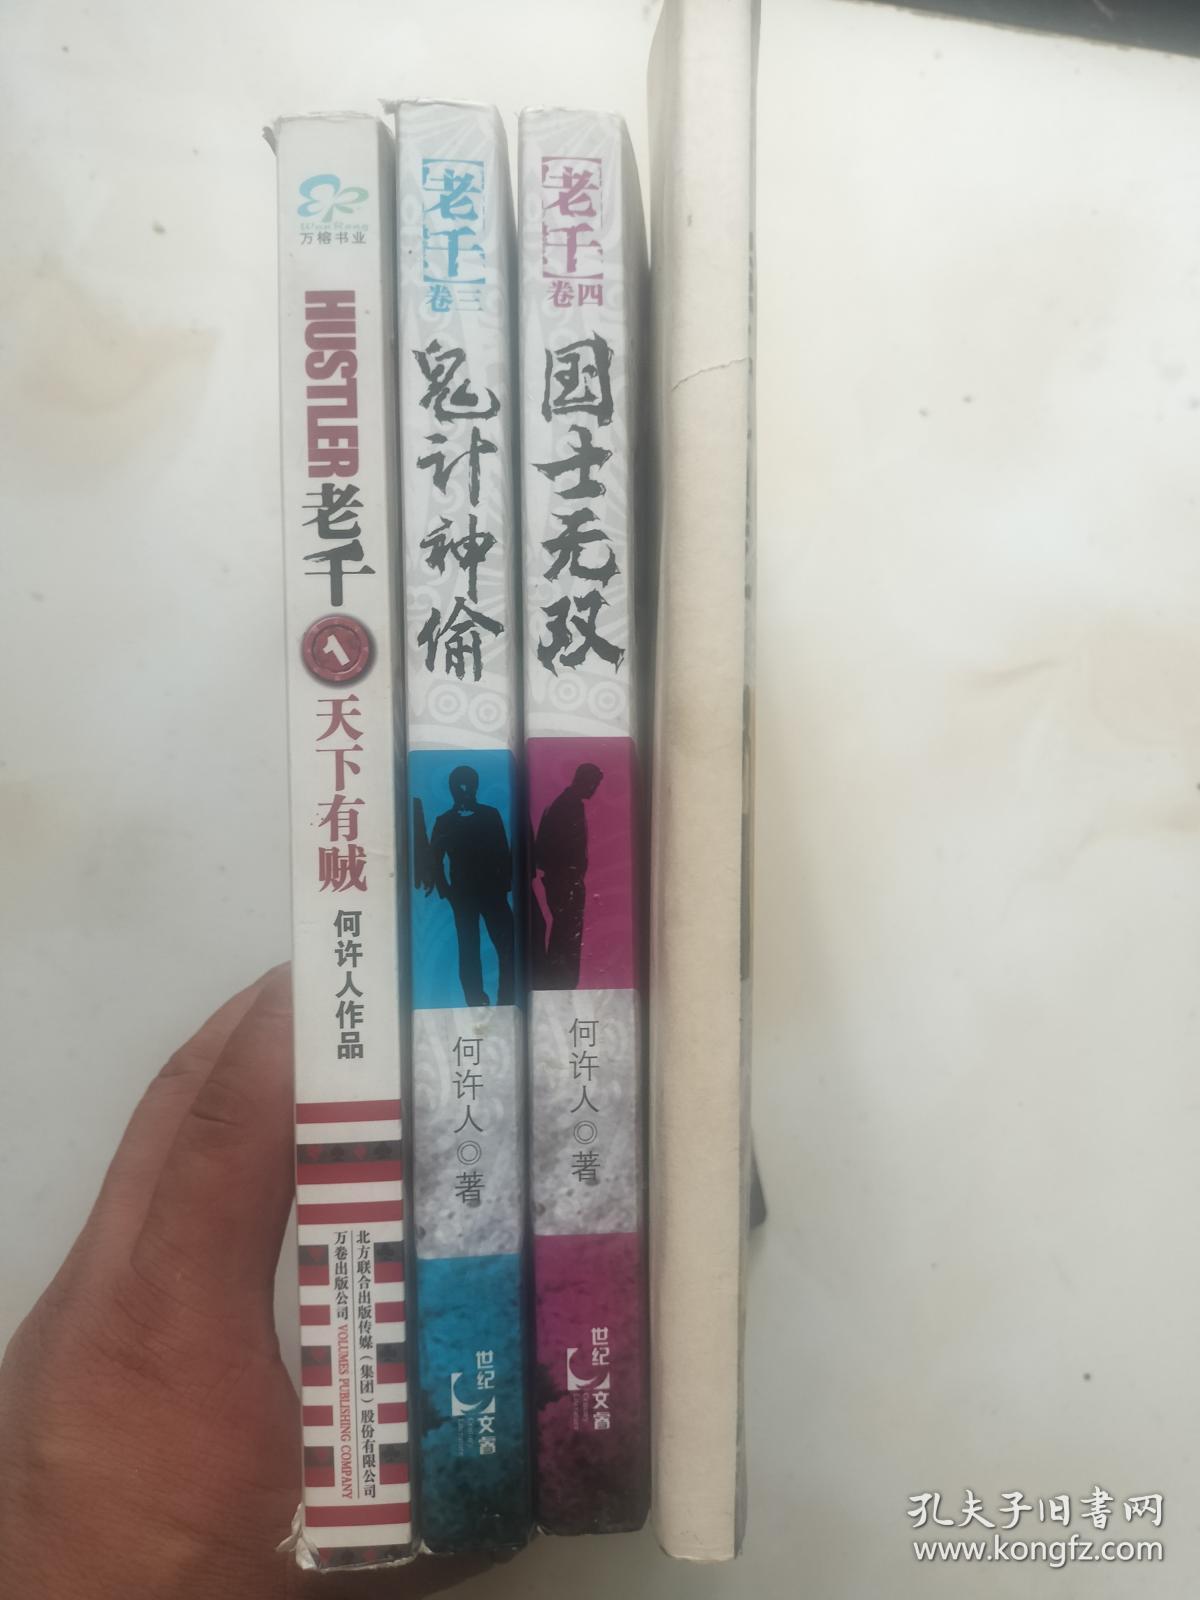 小说《老千》一套四本   卷二为影印版